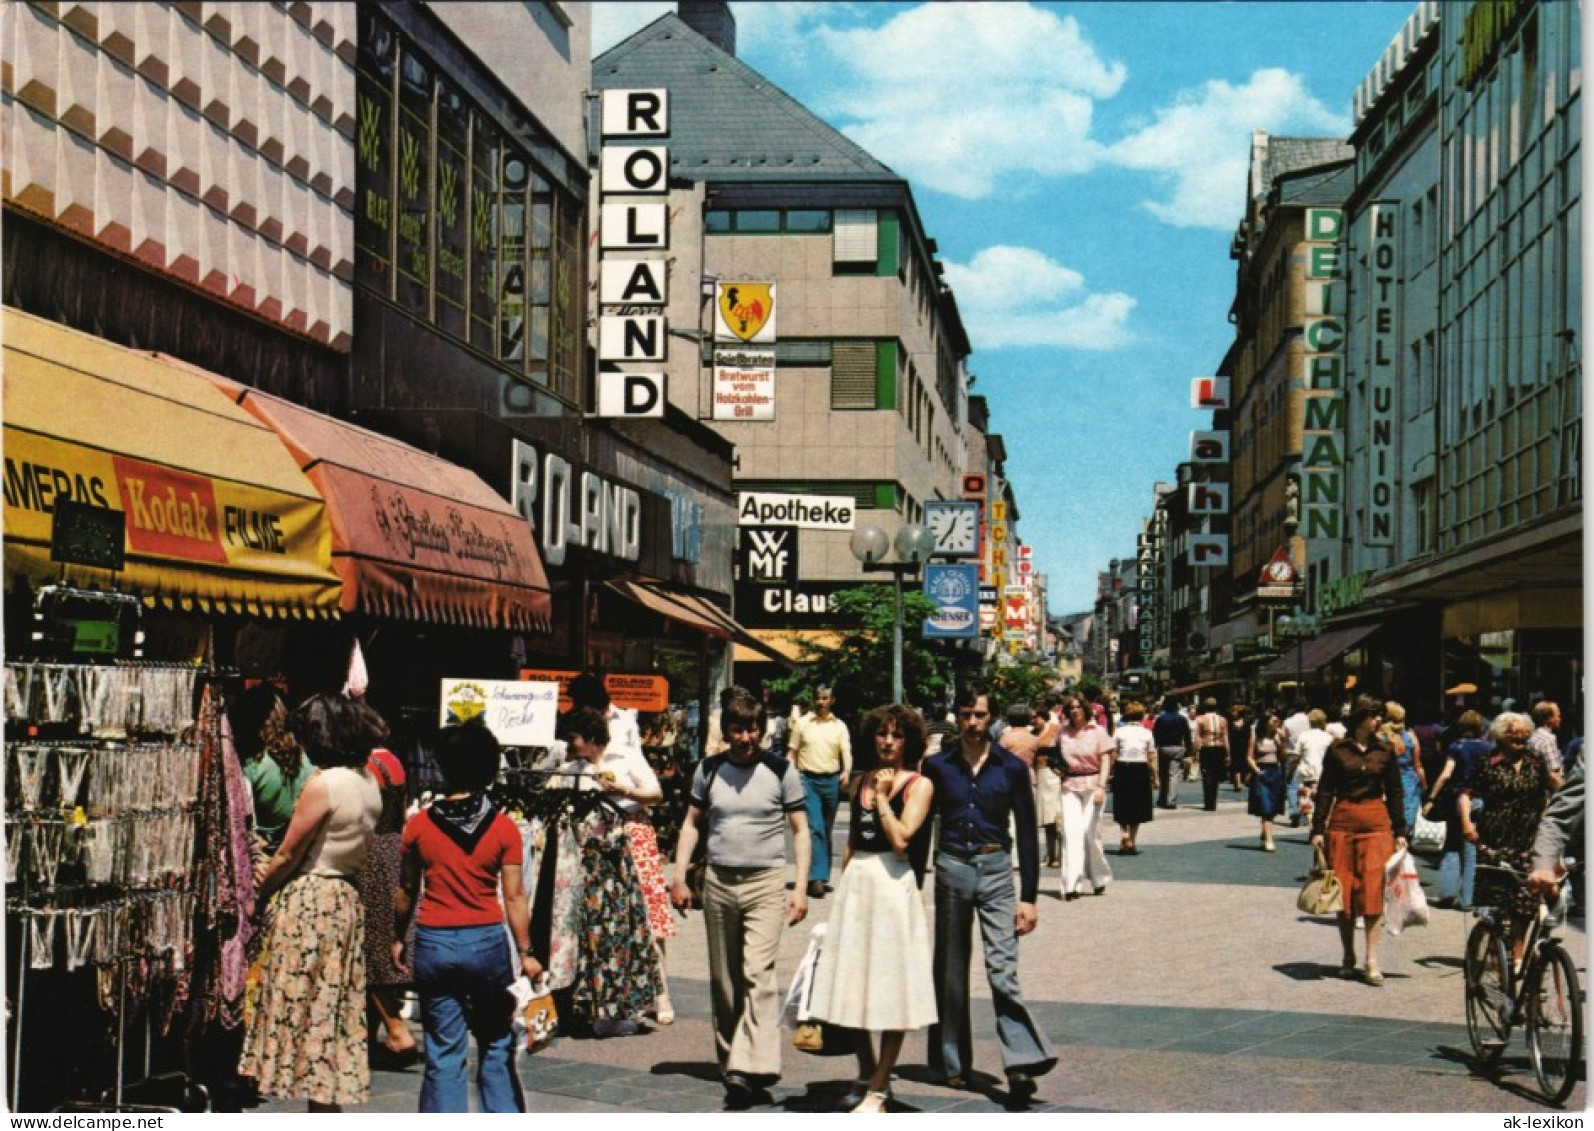 Ansichtskarte Koblenz Löhrstrasse Einkaufsmeile Leute Beim Einkaufen 1975 - Koblenz